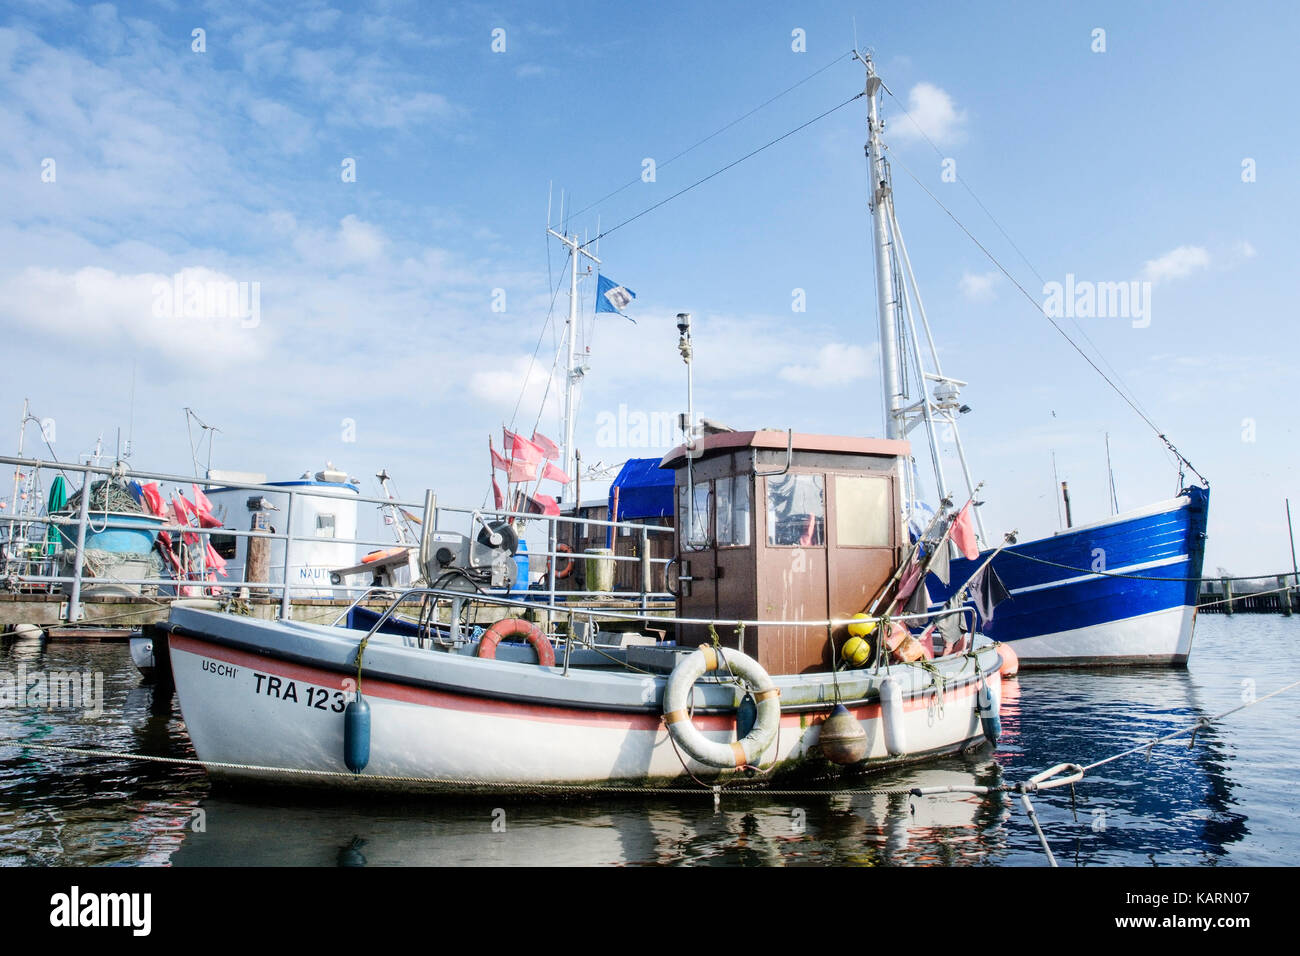 Travem?nde, pesca en barco en el puerto, travemuende, fischerboot im hafen Foto de stock